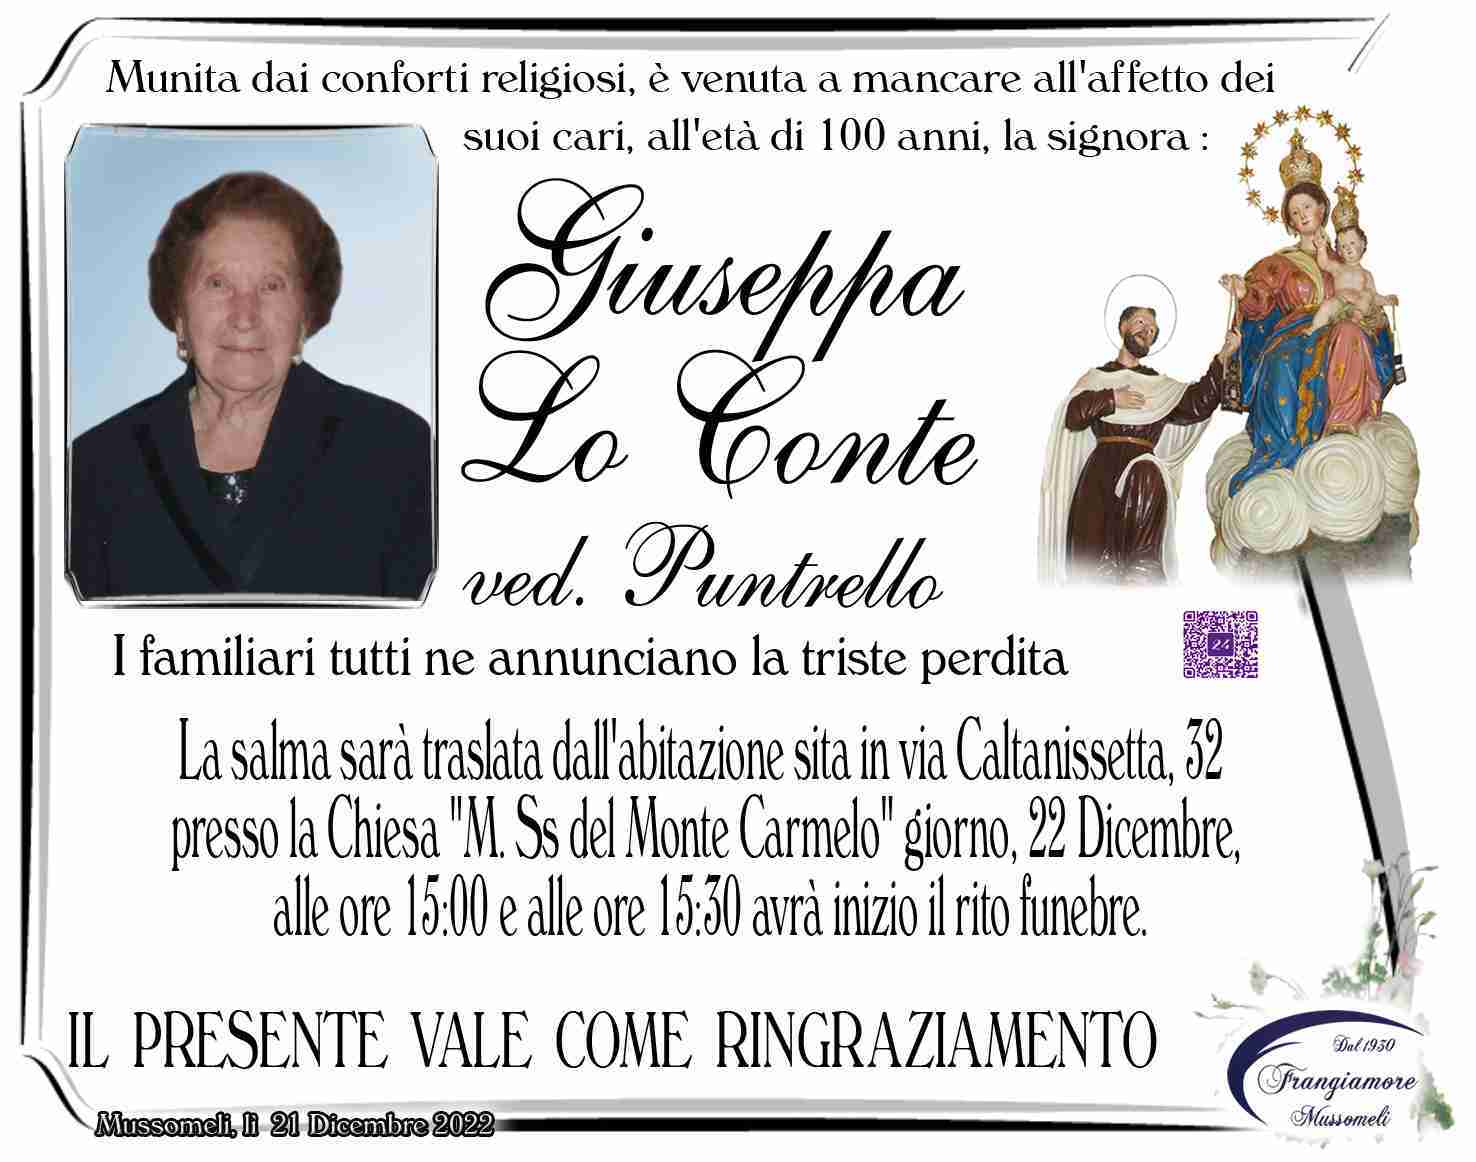 Giuseppa Lo Conte